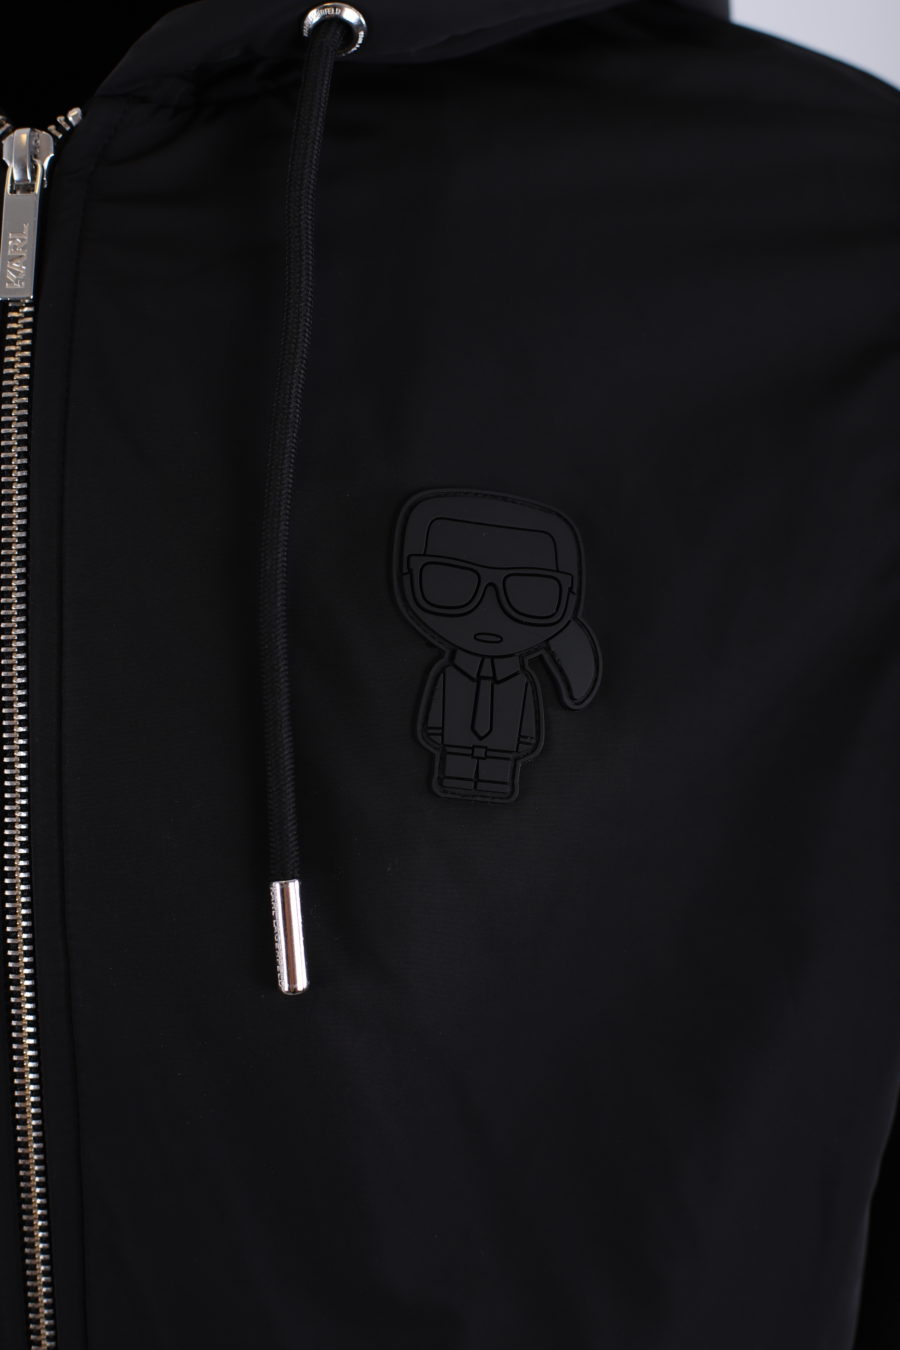 Veste à capuche imperméable noire avec logo "Karl" caoutchouté - IMG 9183